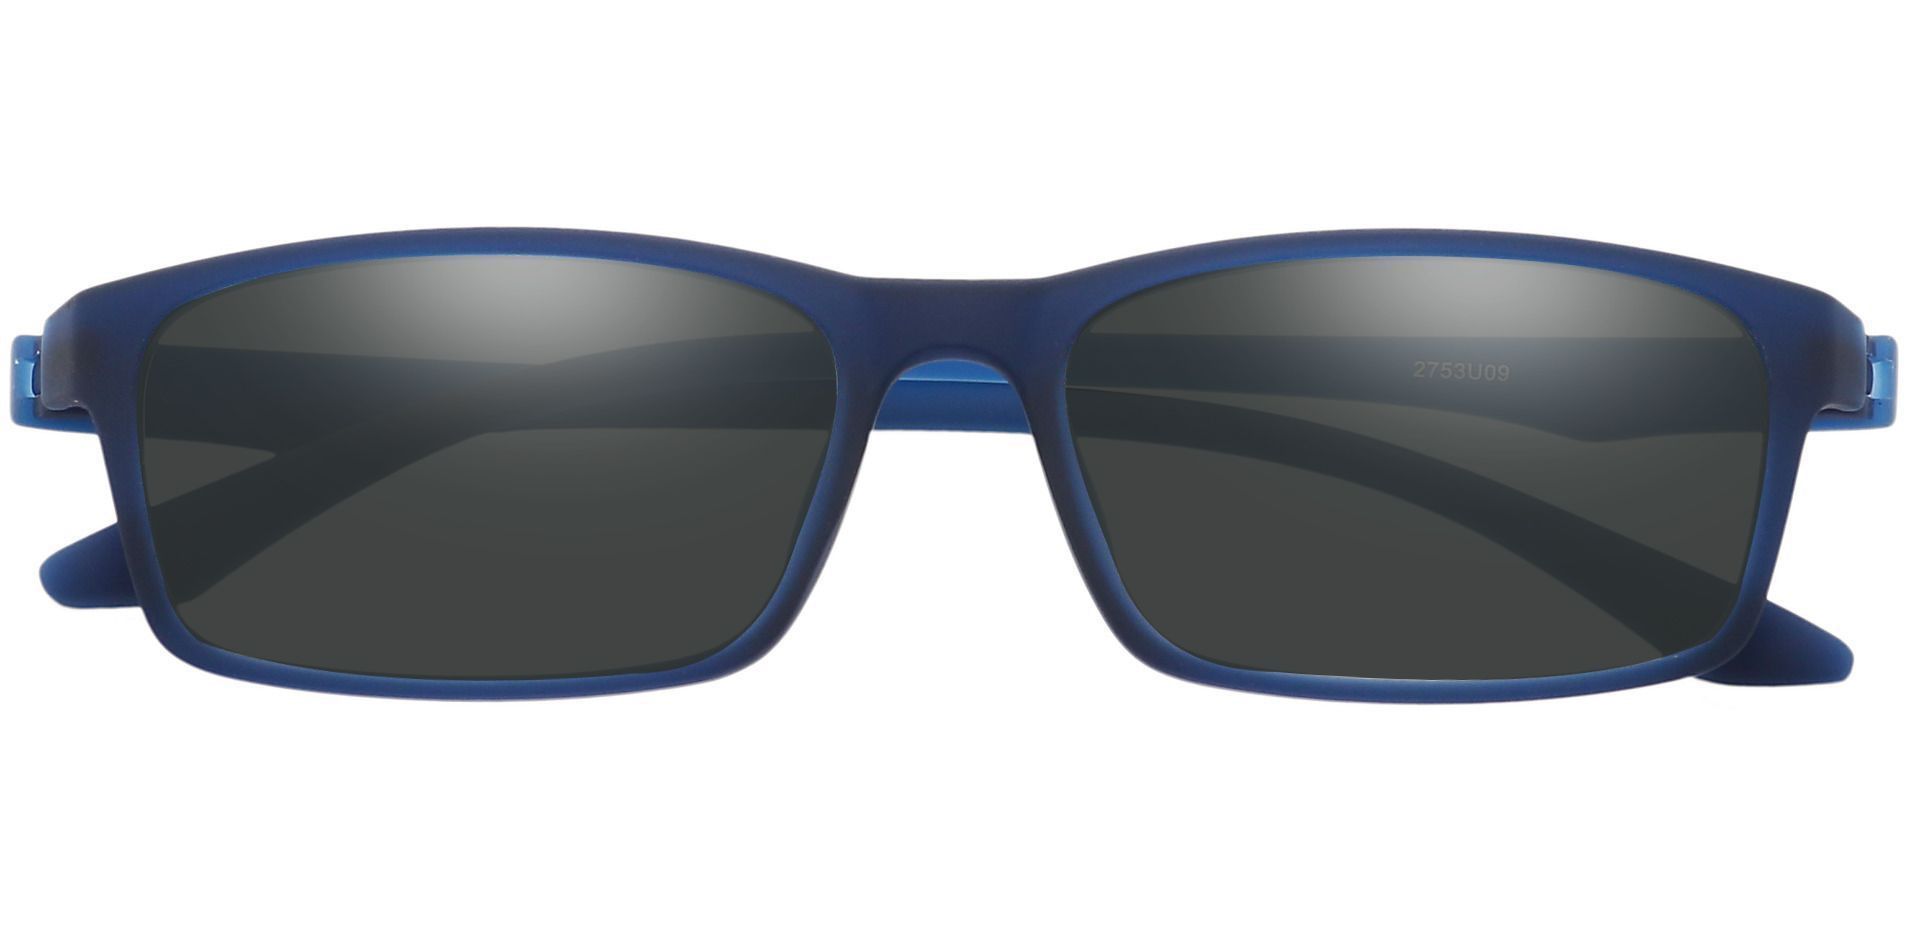 Poplar Rectangle Progressive Sunglasses - Blue Frame With Gray Lenses